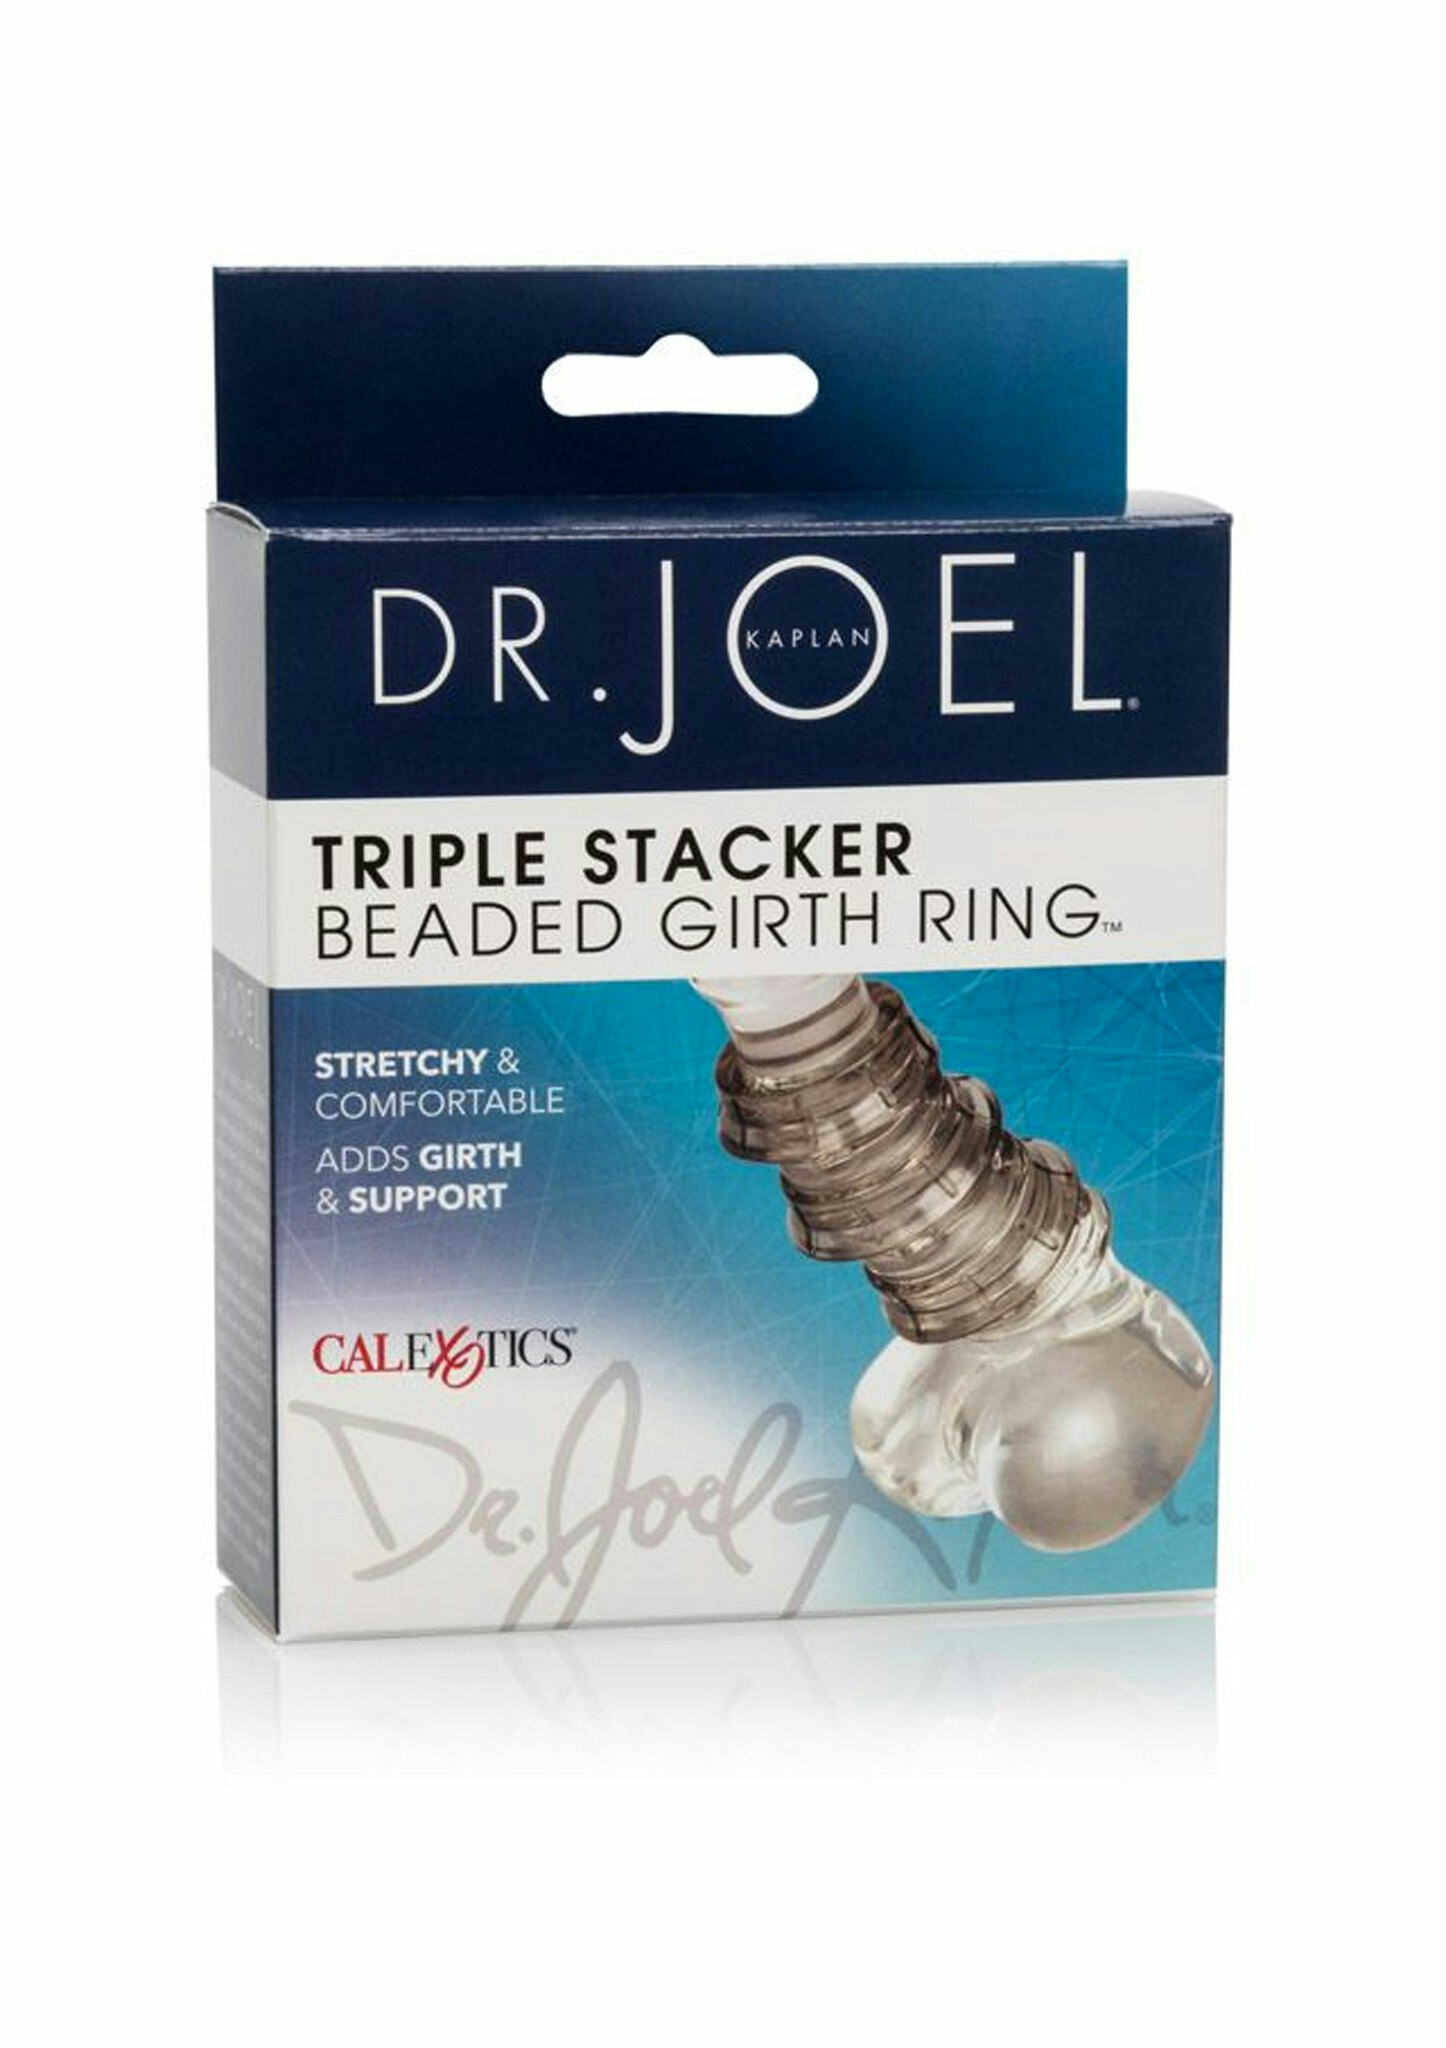 Dr Joel Kaplan - Triple stacker girth ring, Smoke